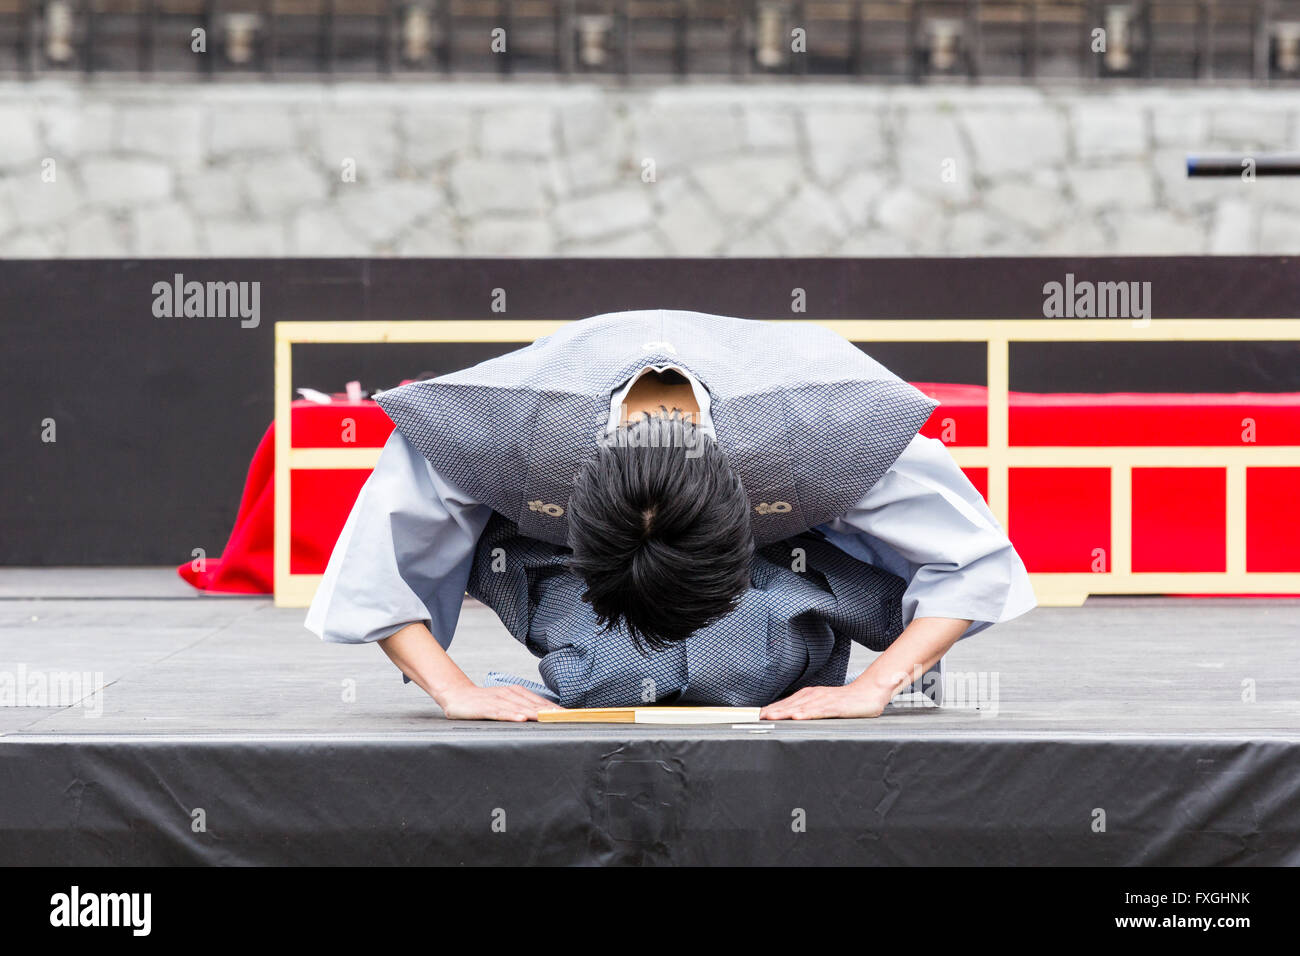 Giappone Kumamoto. Uomo giapponese inginocchiato sul palco indossando maschio grigio yukata tradizionale camicia ed eseguire la procedura completa di profondo inchino con la testa quasi sul pavimento. Foto Stock